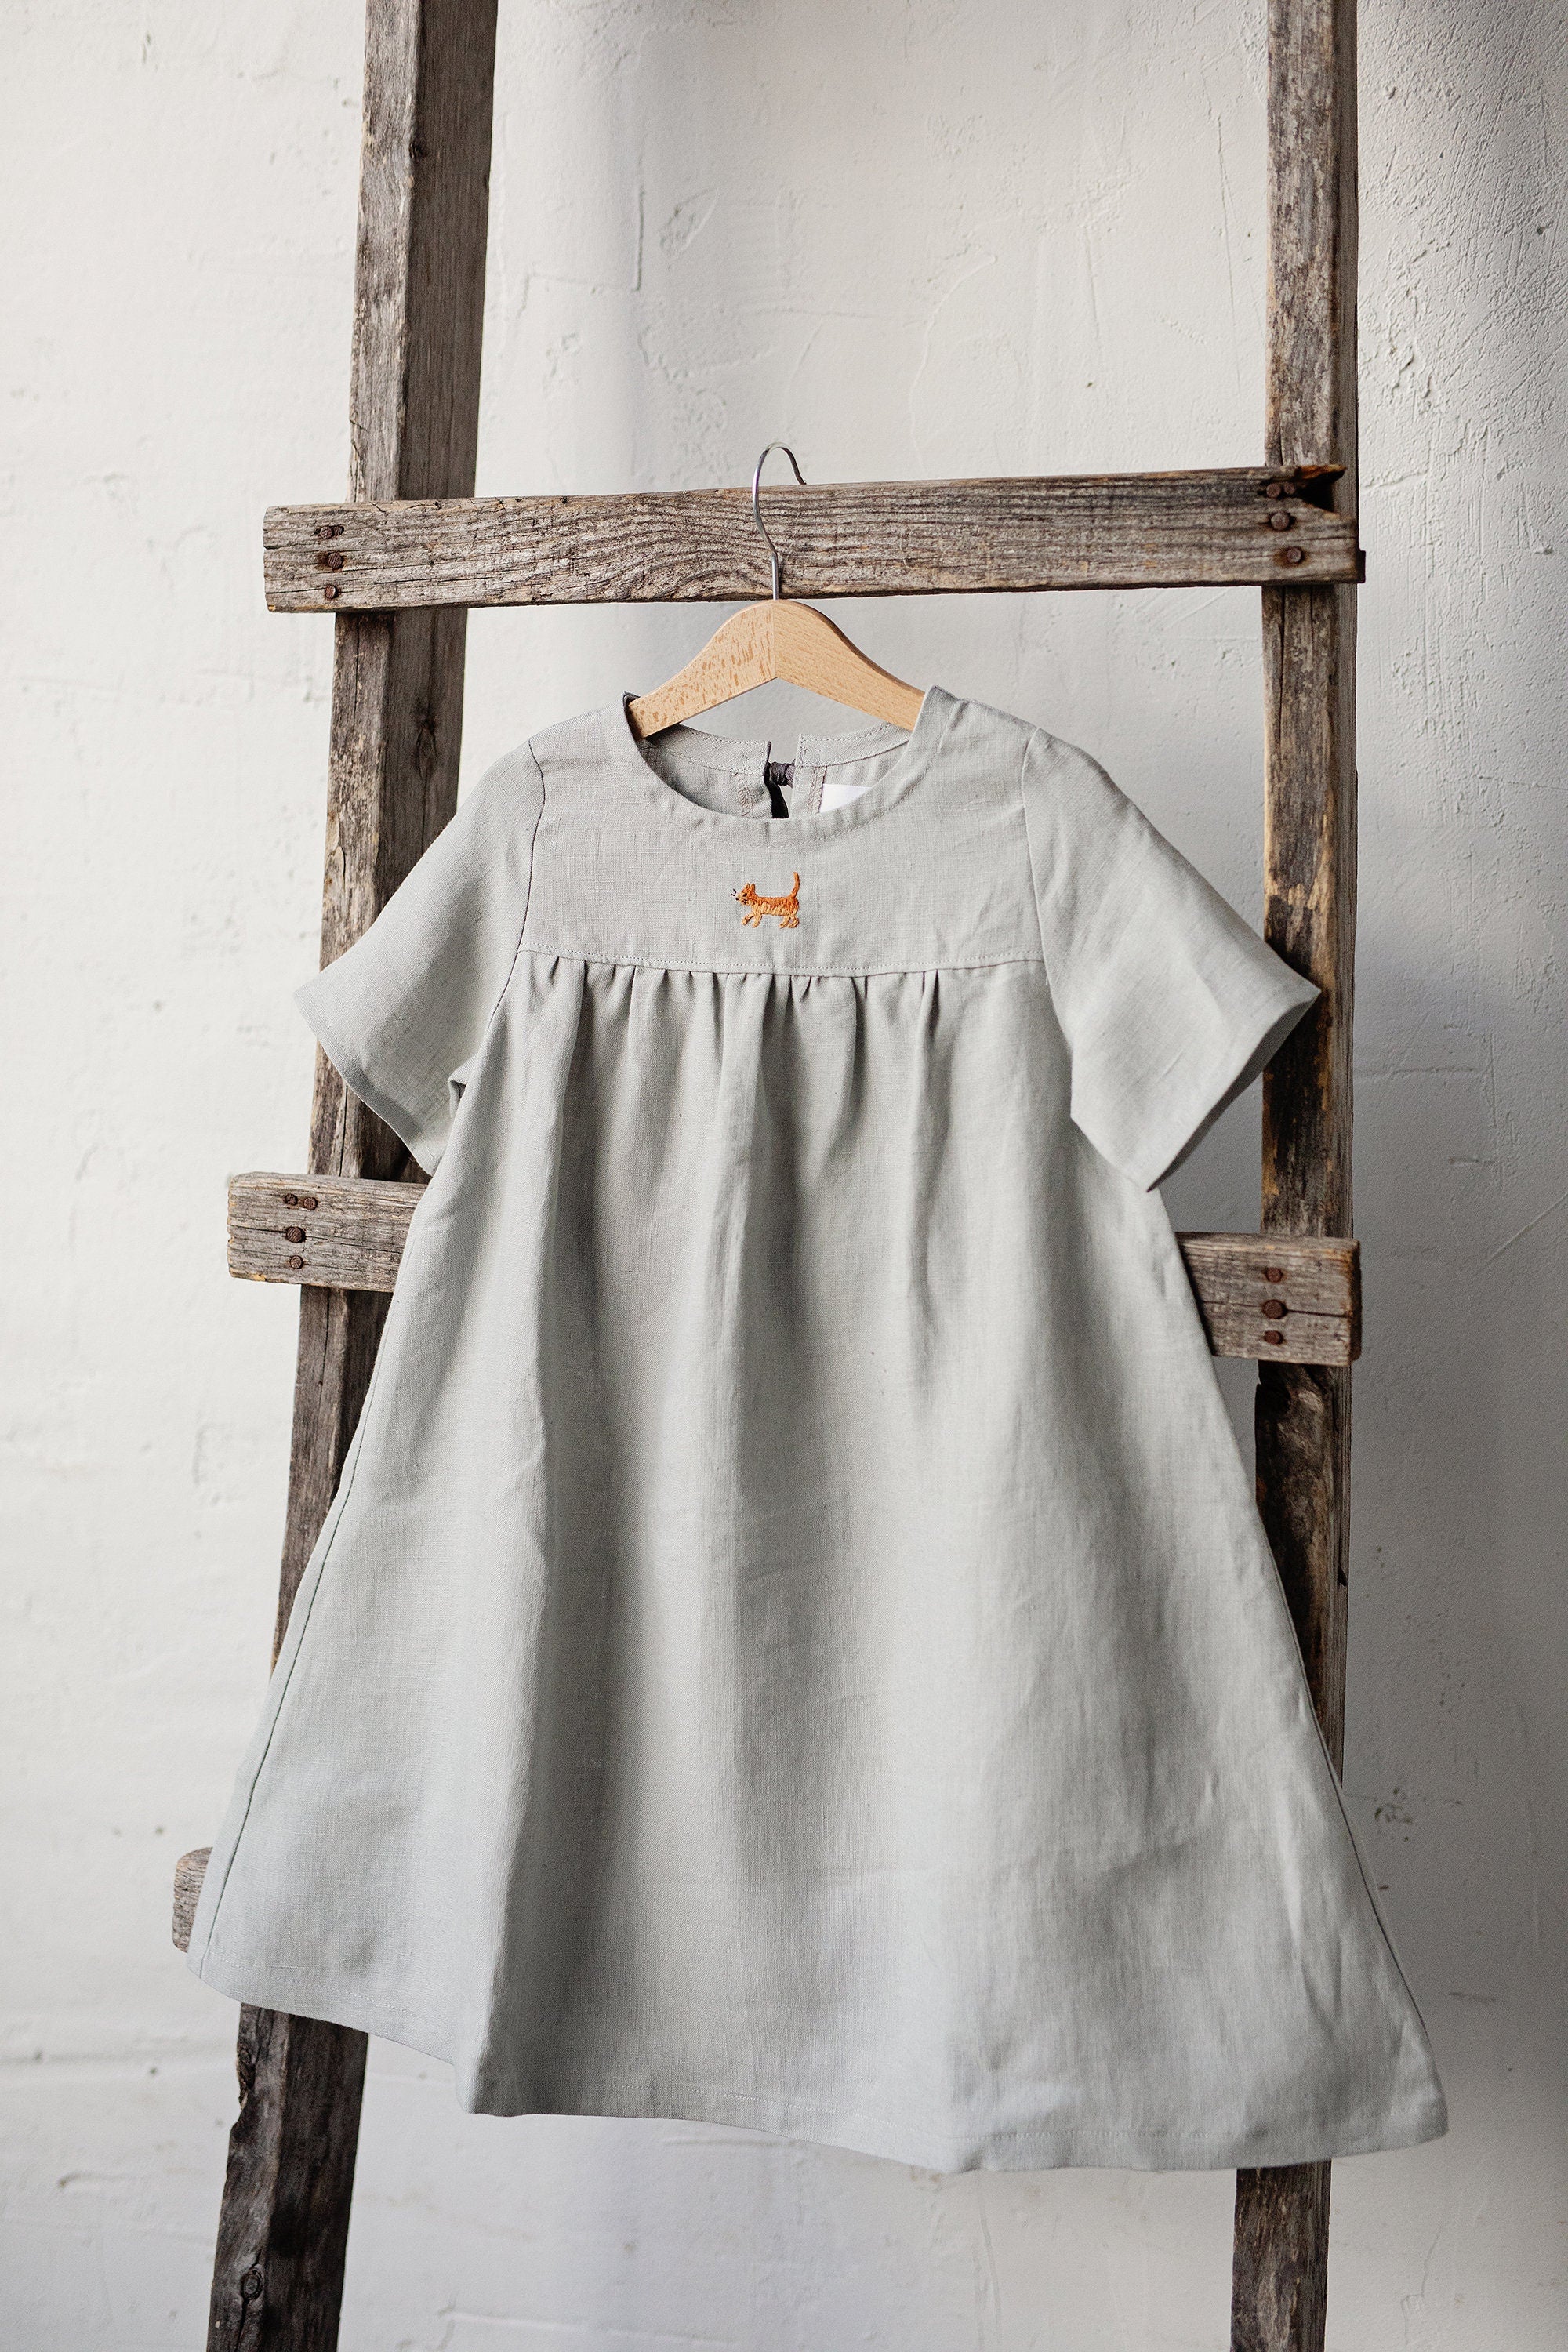 Fog Grey Summer Linen Dress